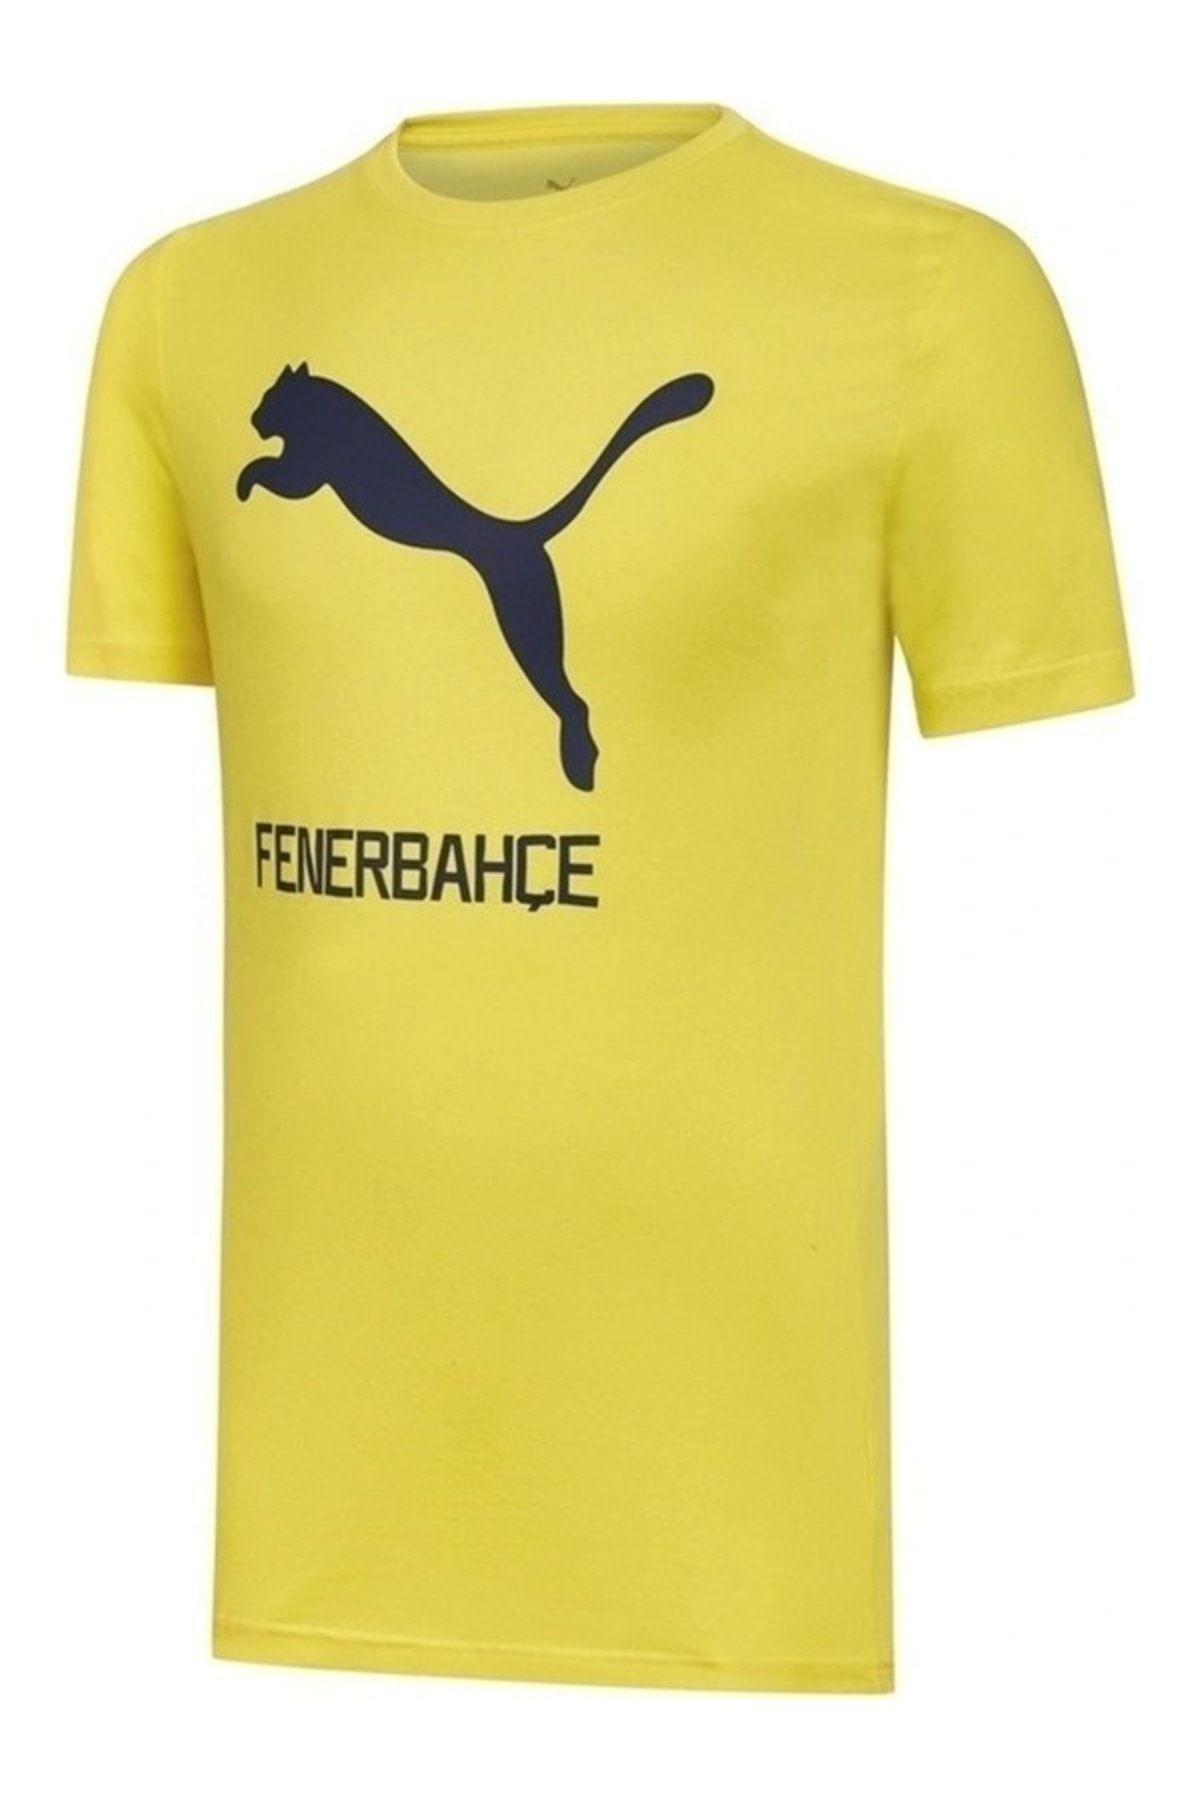 Fenerbahçe Puma Forma Lisanslı Sarı Tshirt